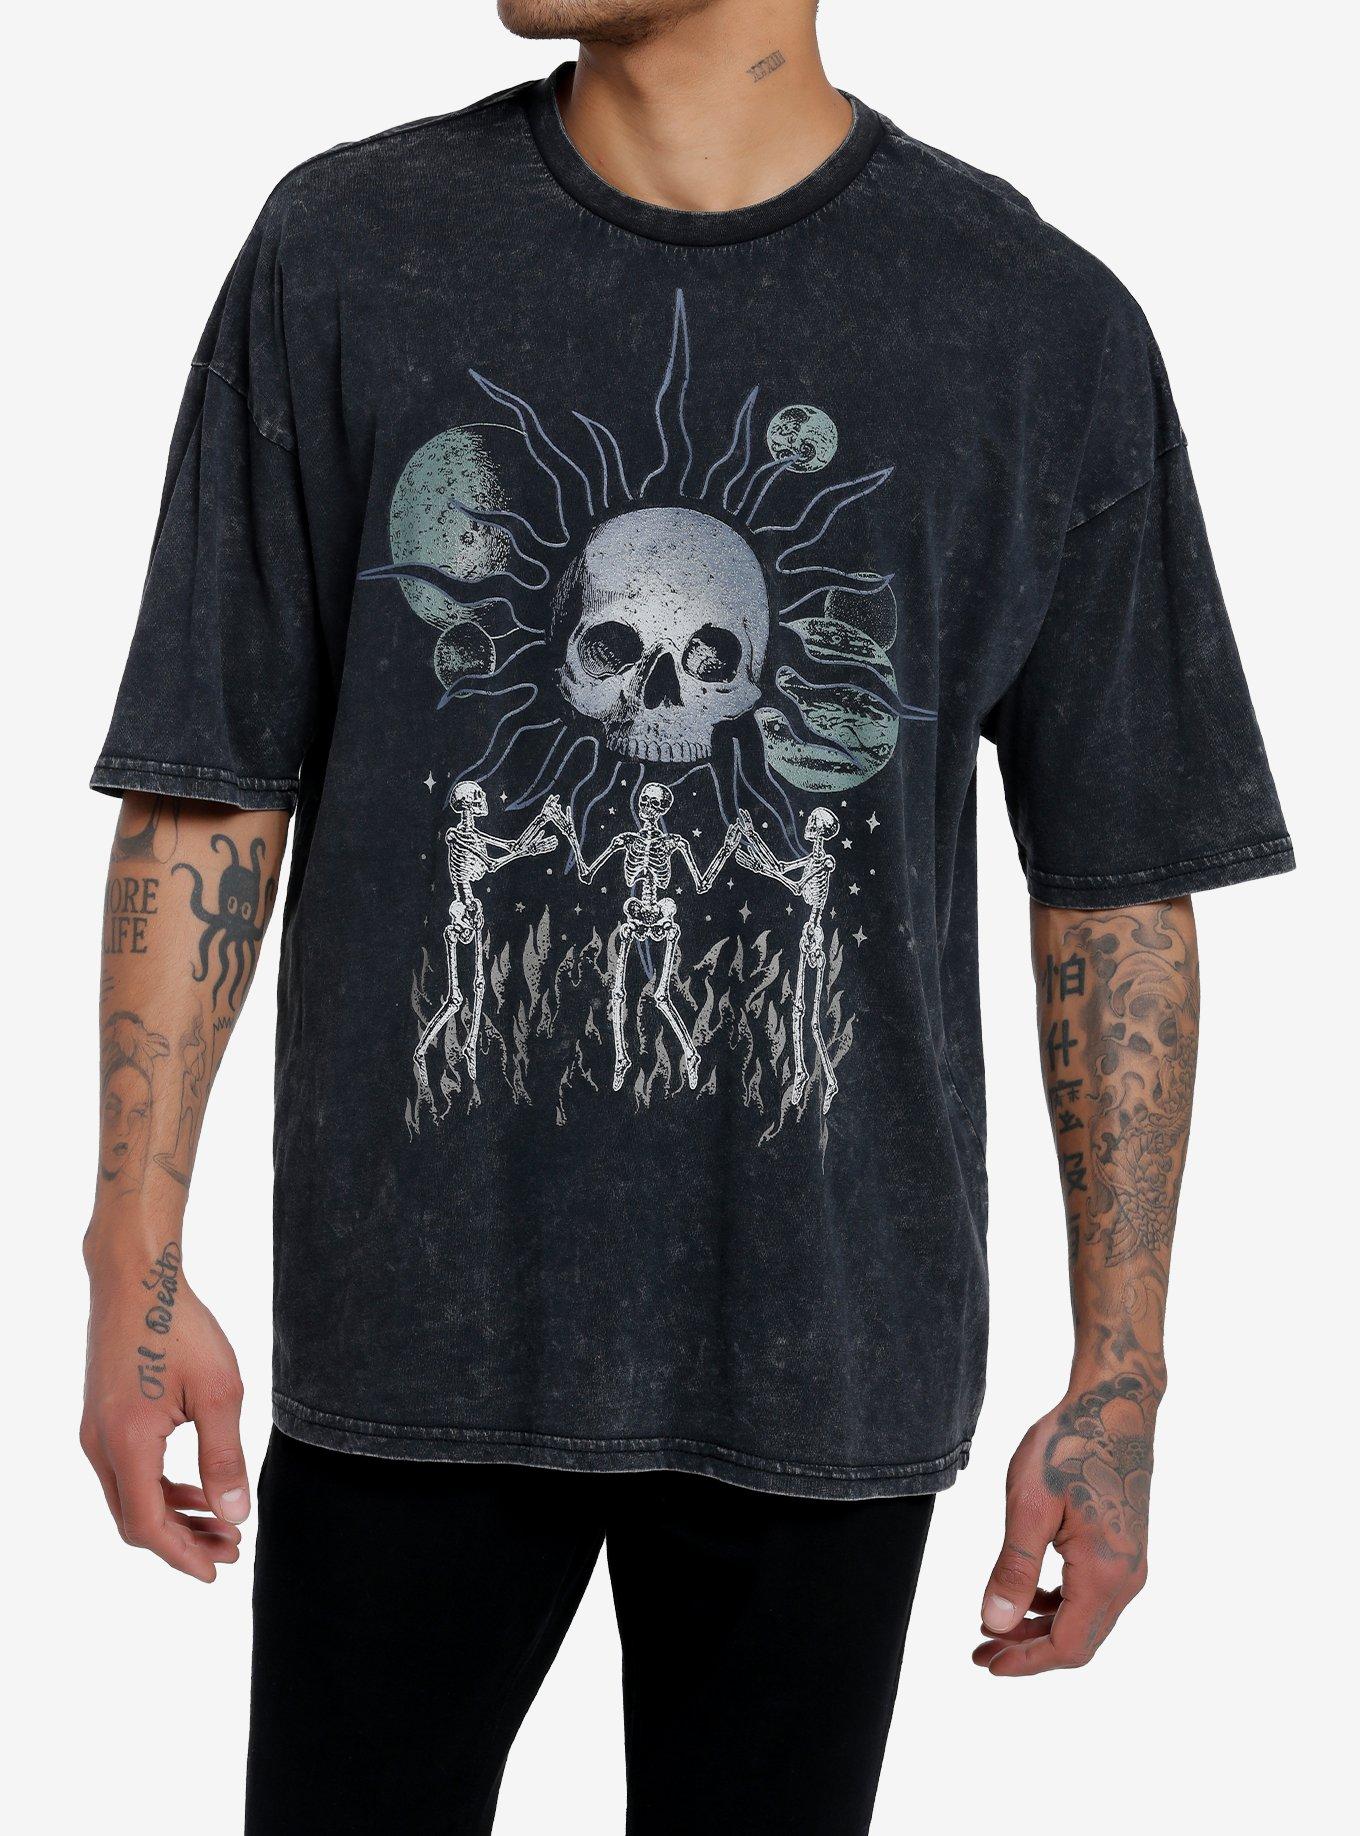 Women's Lost Gods Halloween Sugar Skull T-Shirt - Navy Blue - Medium